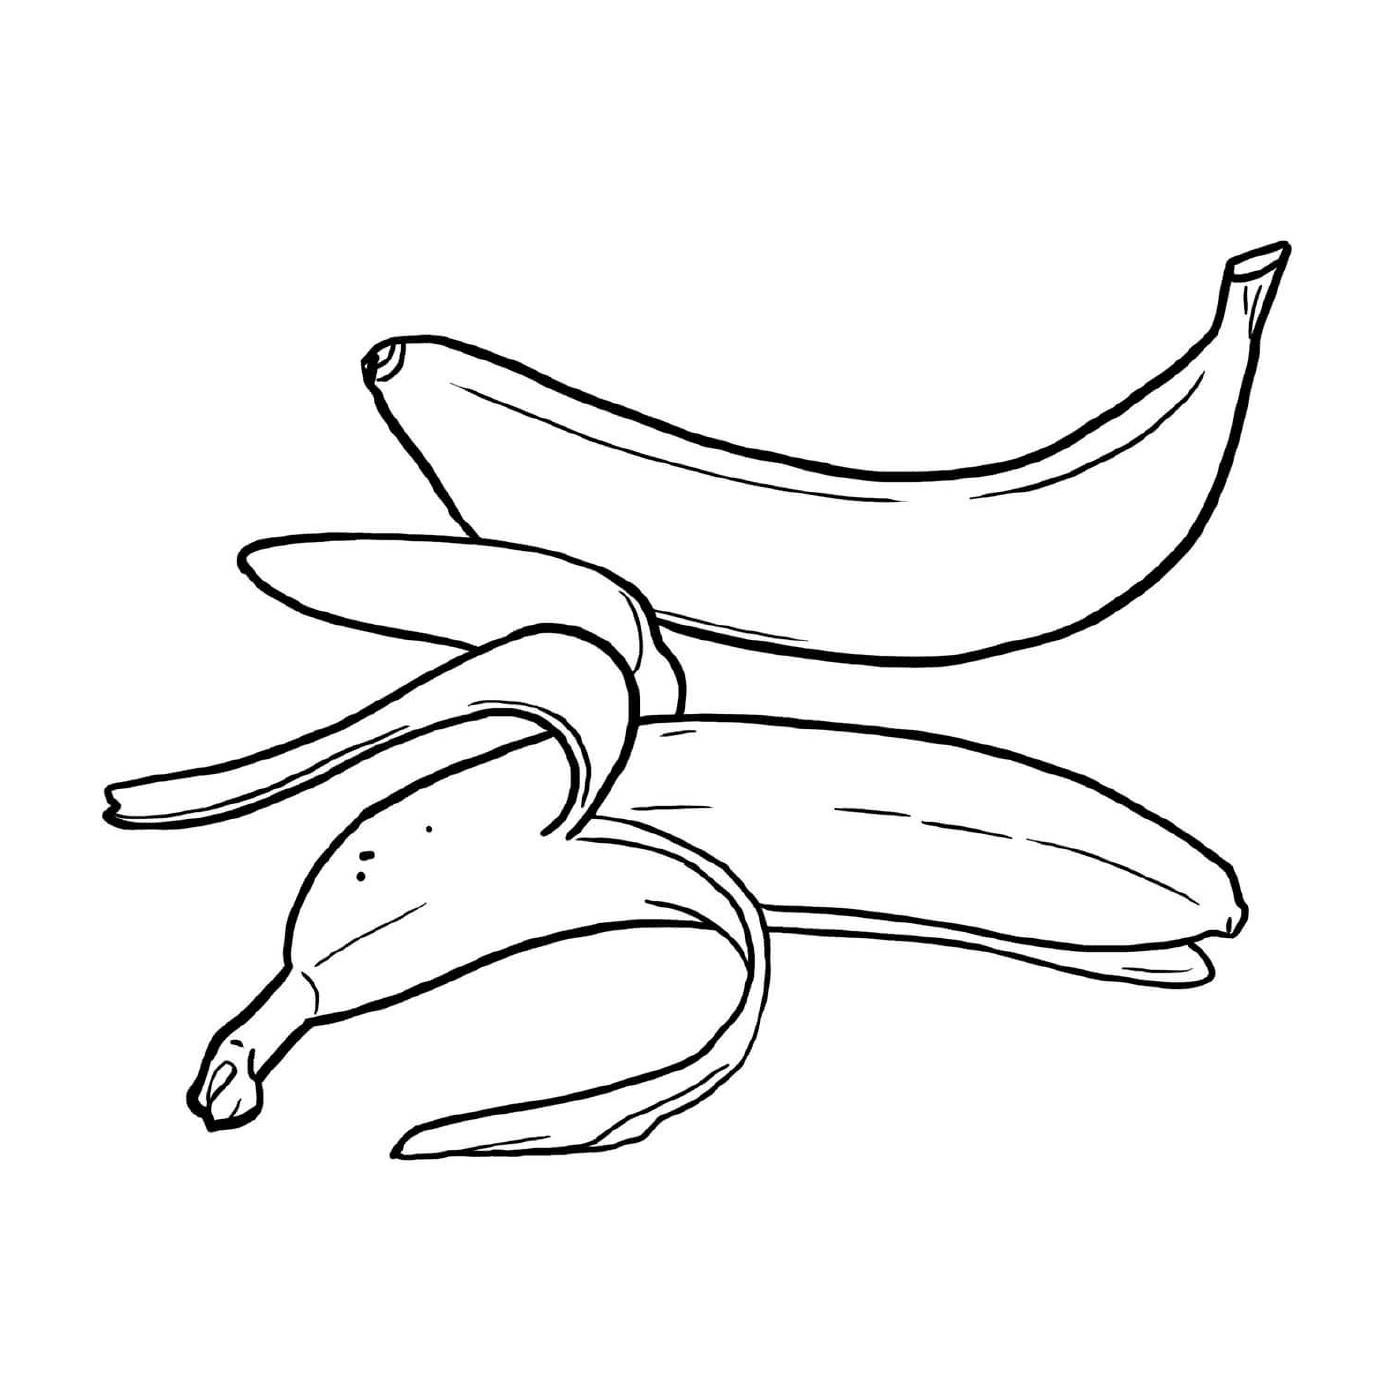  Diverse banane poste su un tavolo 